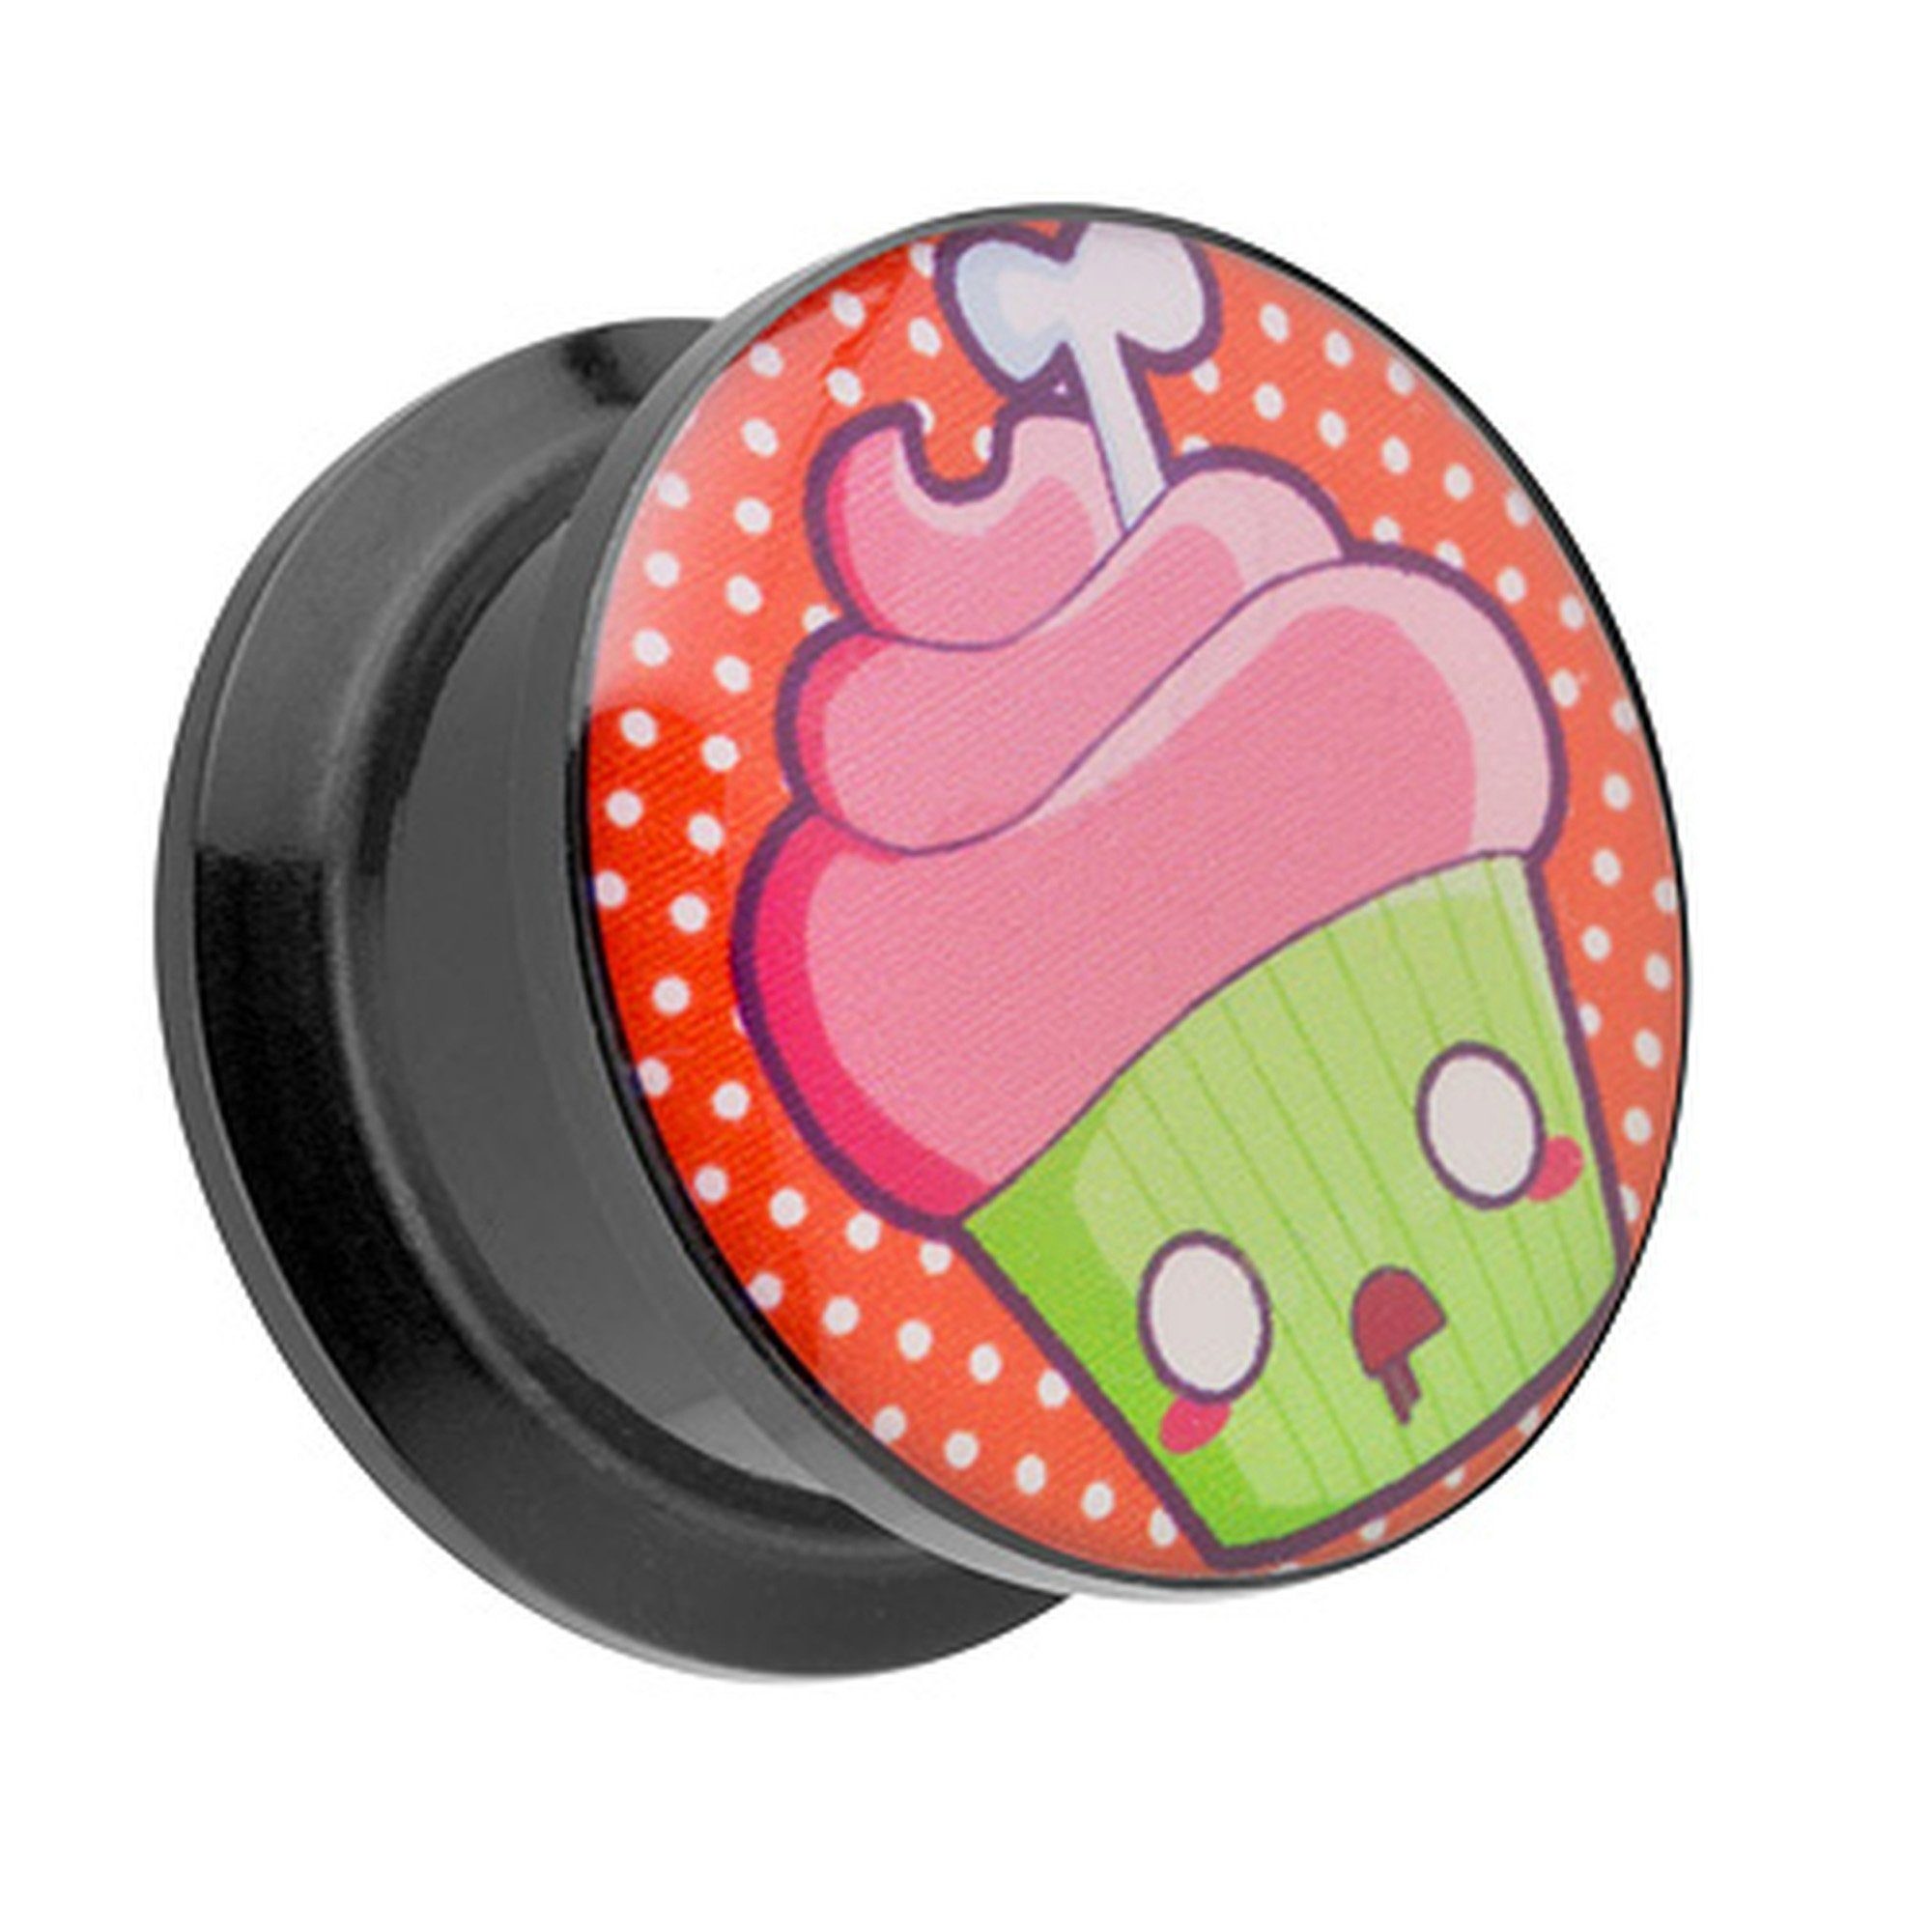 Taffstyle Plug Piercing Schraubverschluß Tote Cupcake Plug Tote Ohrpiercing Schraub Tunnel mit Flesh Picture Ohr Muffin, Kunststoff